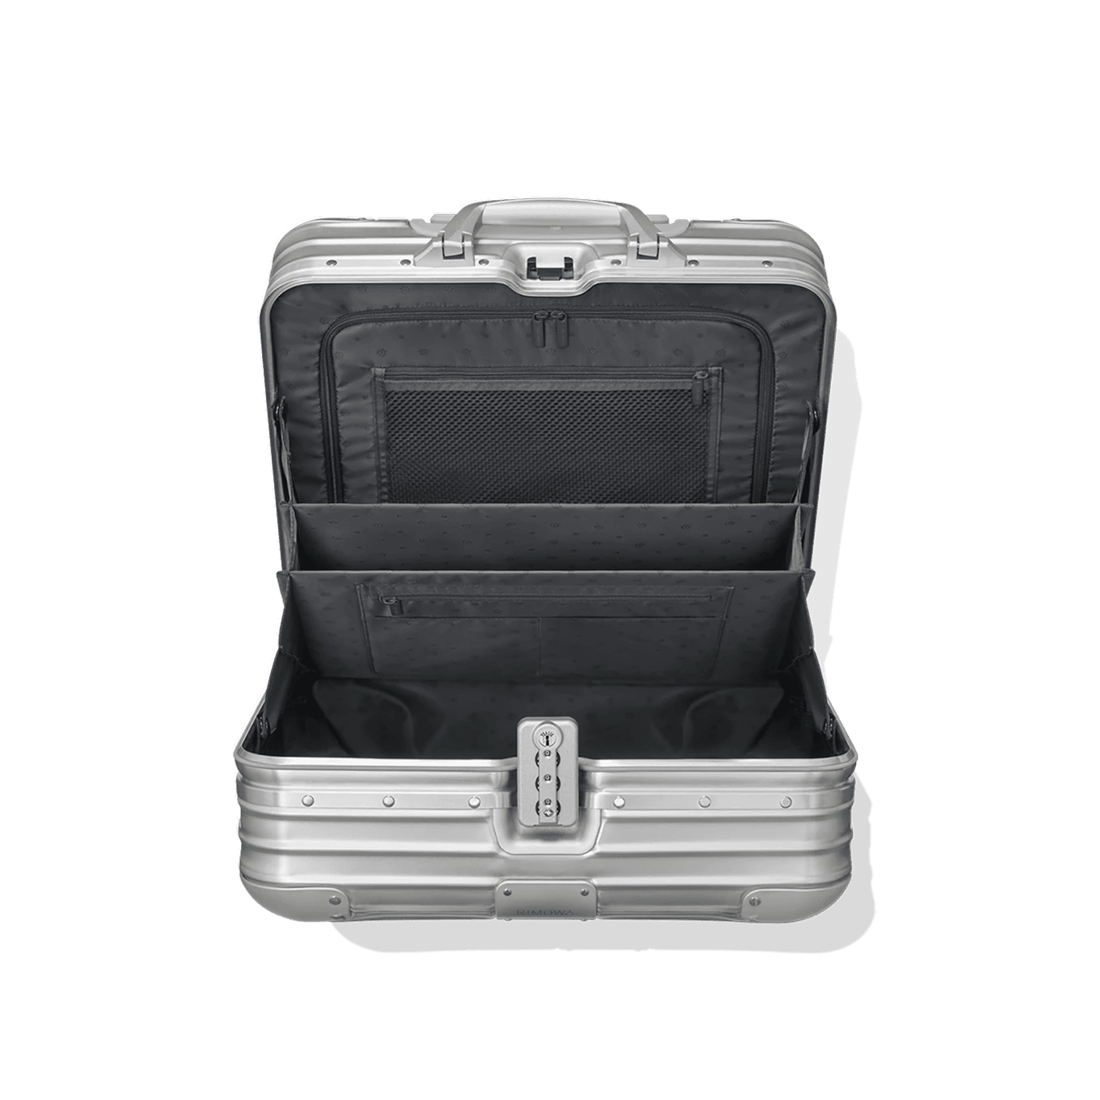 RIMOWA Original Compact Suitcase in Silver - Aluminium - Unisex